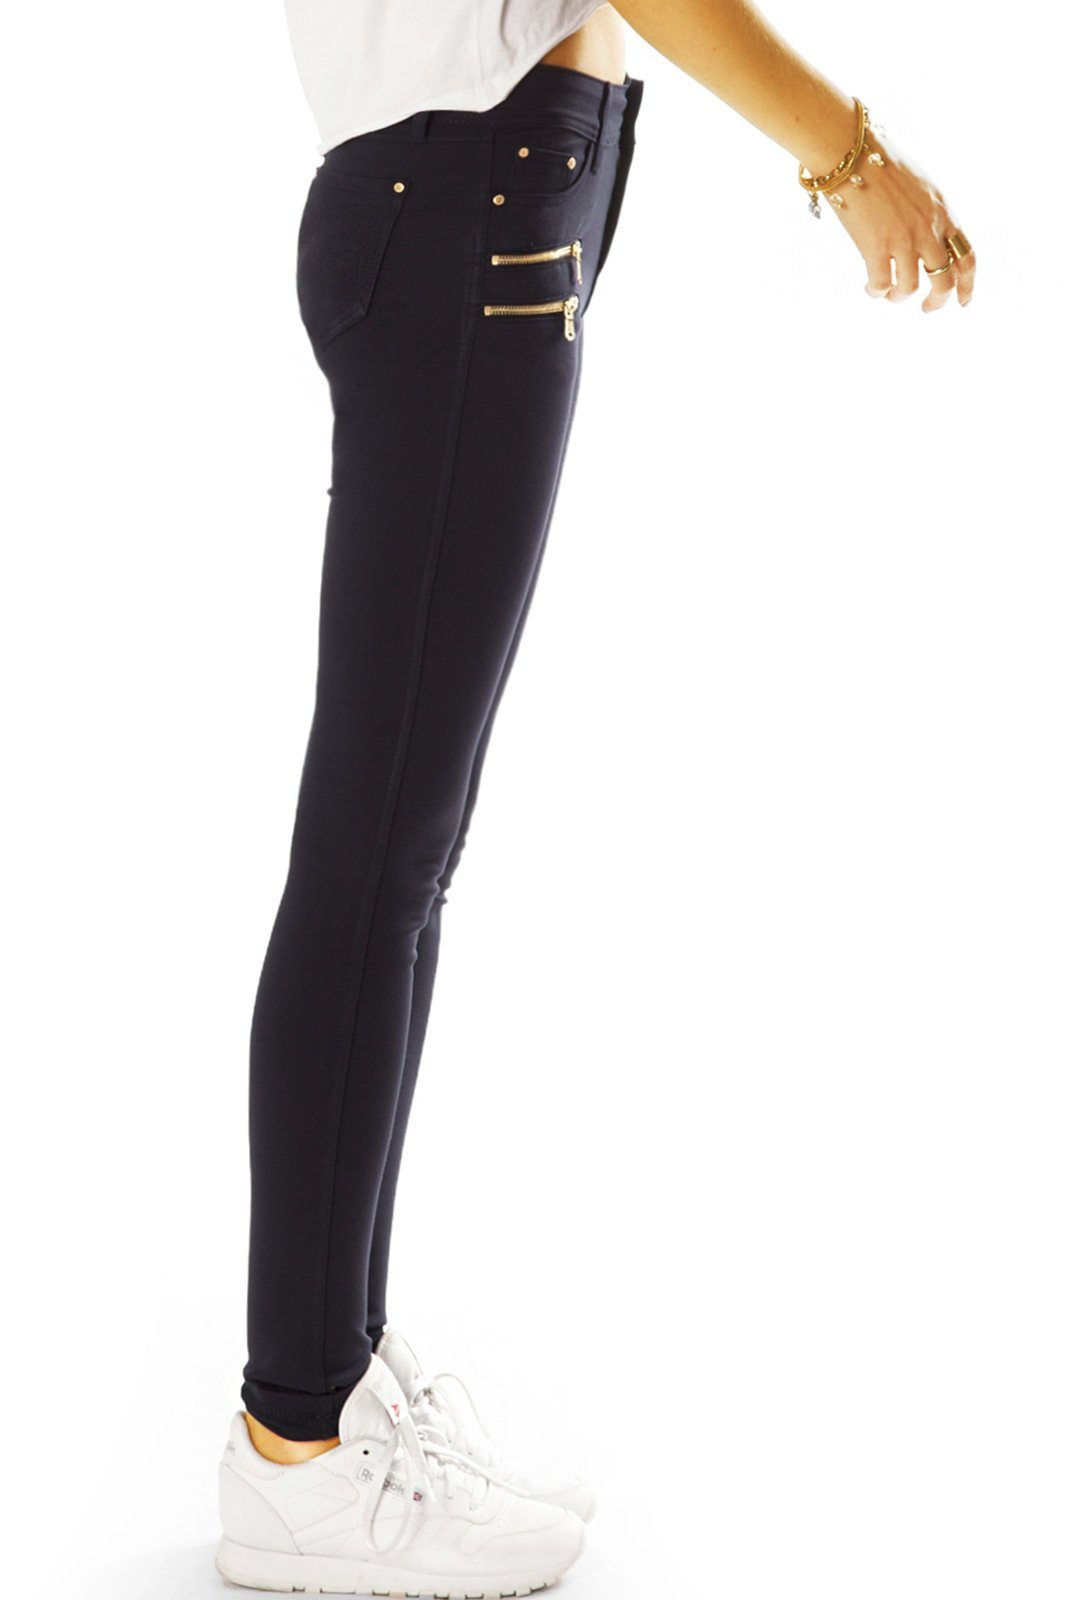 j39g-2 Damen be Röhren Klassische Stoffhose Unifarben Stretch - - Hose Stretch-Hose in - schwarz Elegante styled